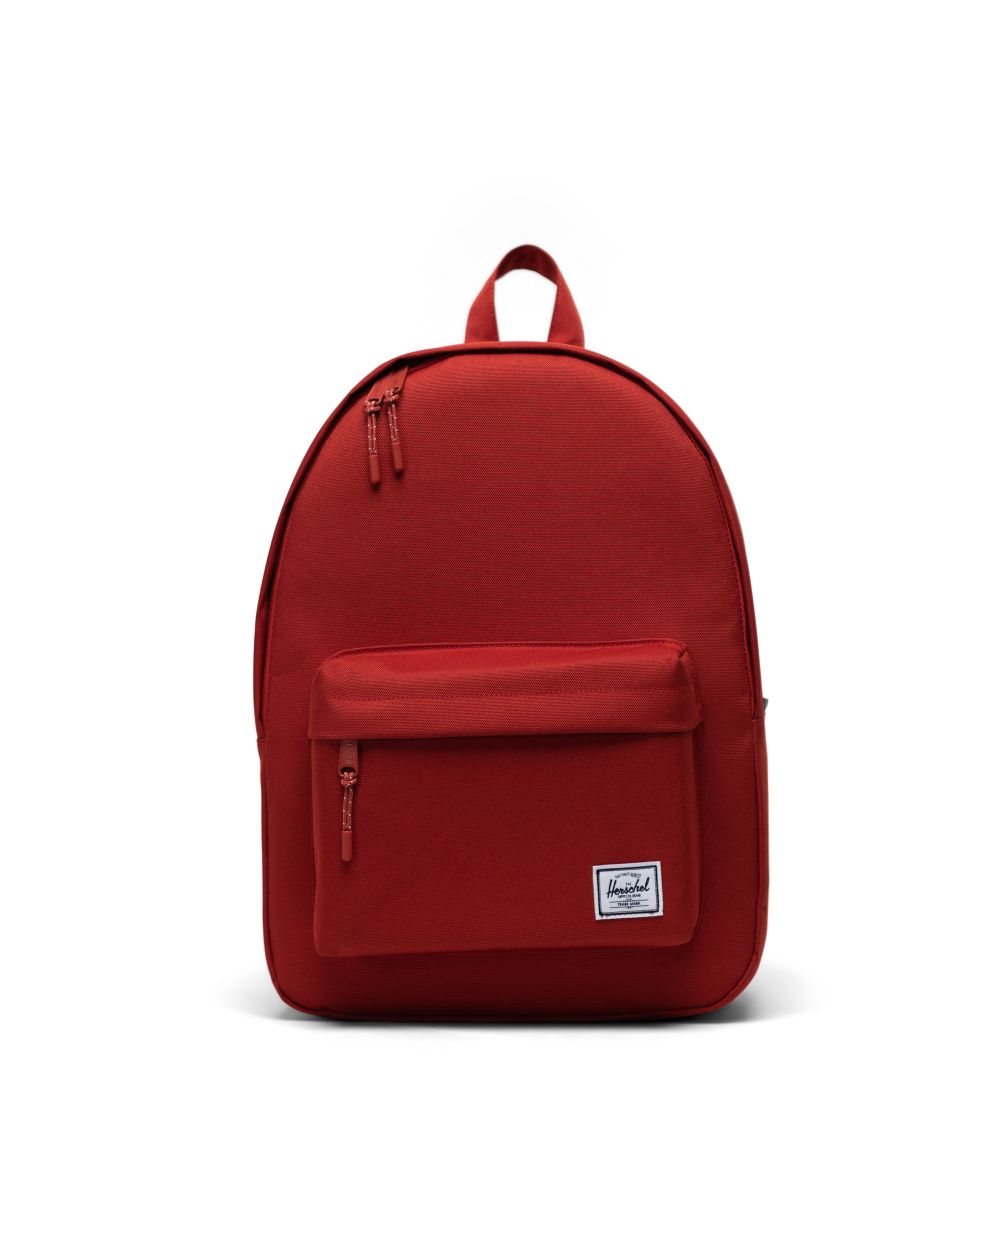 Herschel Classic Backpack #2009-05 Red